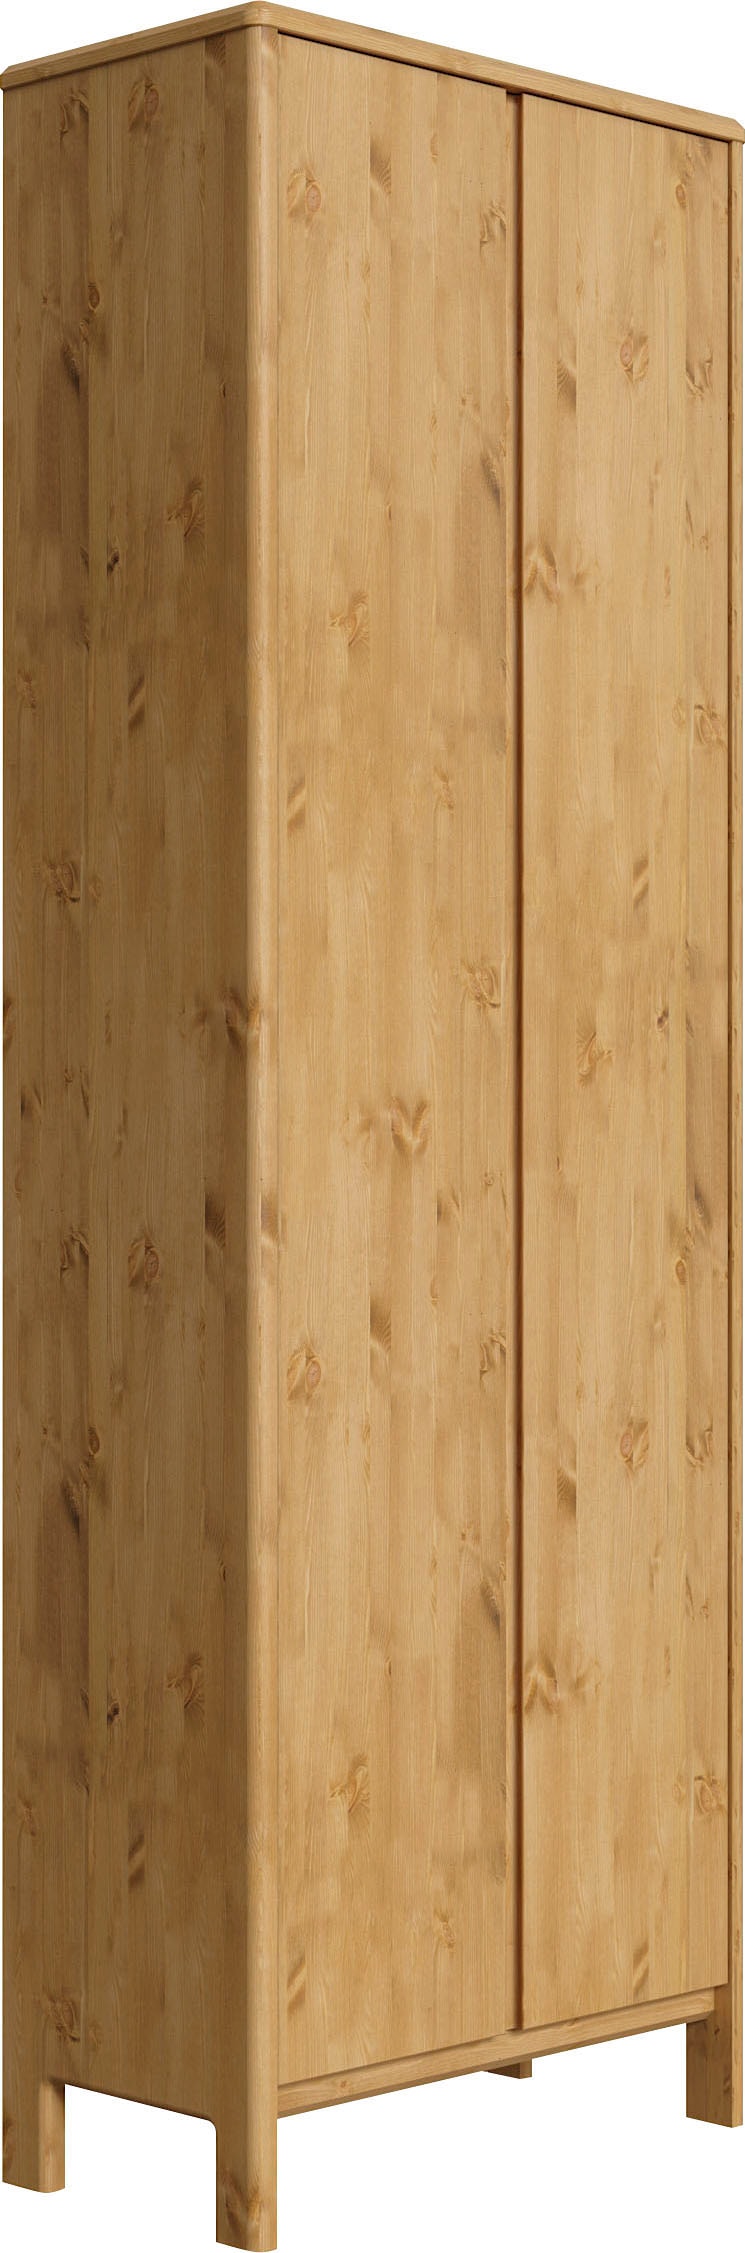 Garderobenschrank „Luven“, aus Massivholz, Höhe 192 cm, natur B/H/T: 65 cm x 192 cm x 34 cm